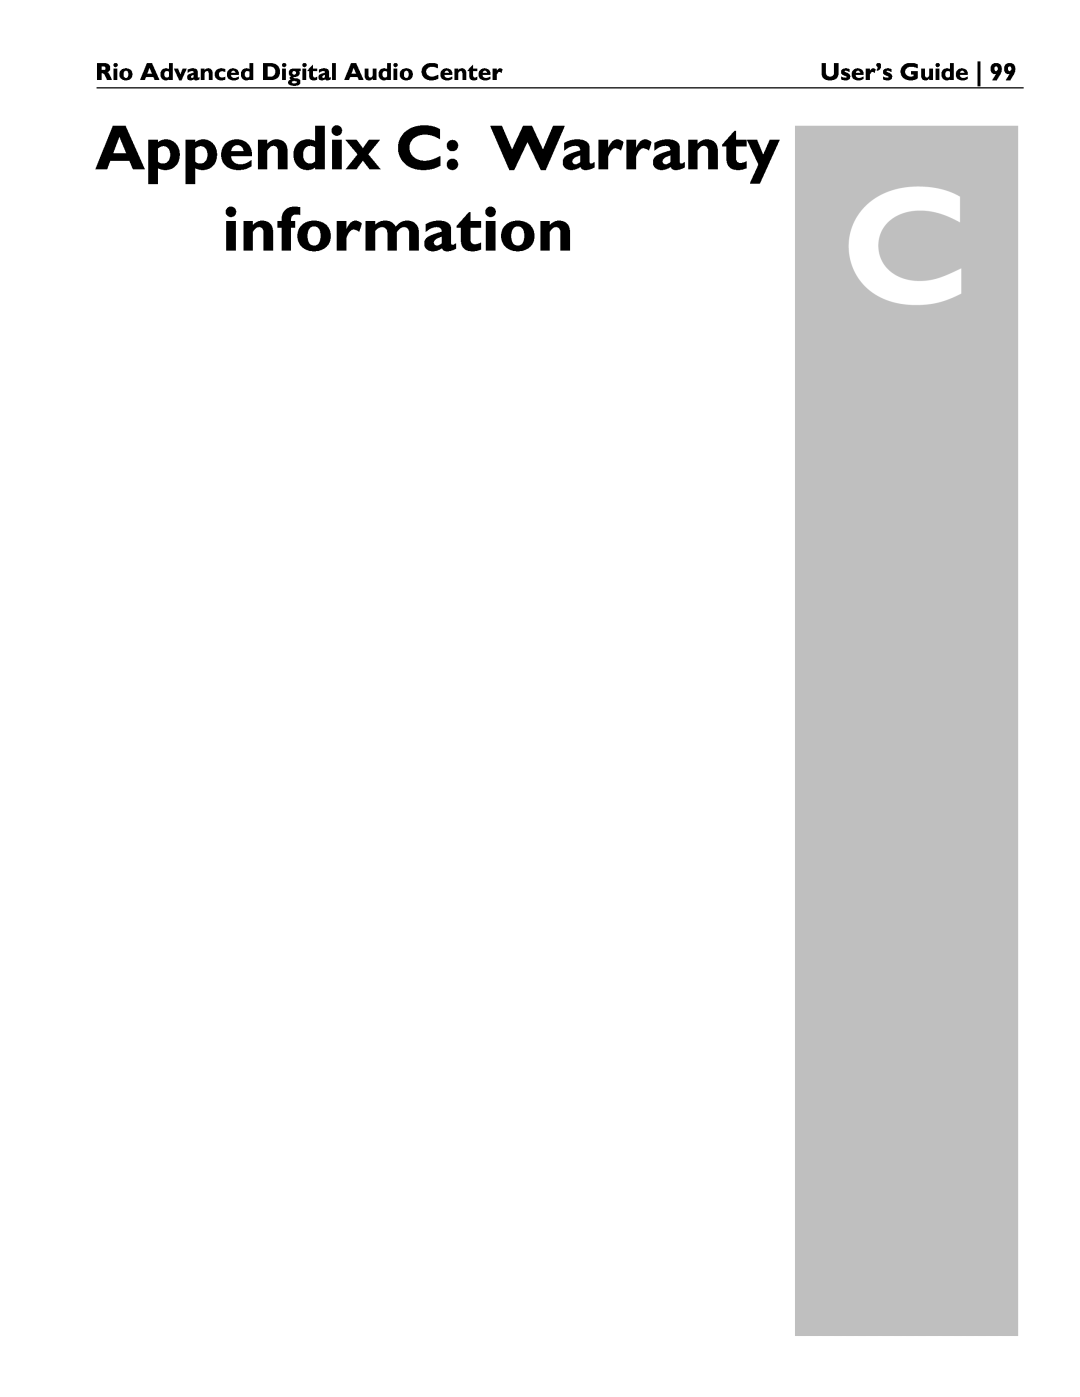 Rio Audio manual Appendix C: Warranty information C, Rio Advanced Digital Audio Center, User’s Guide 